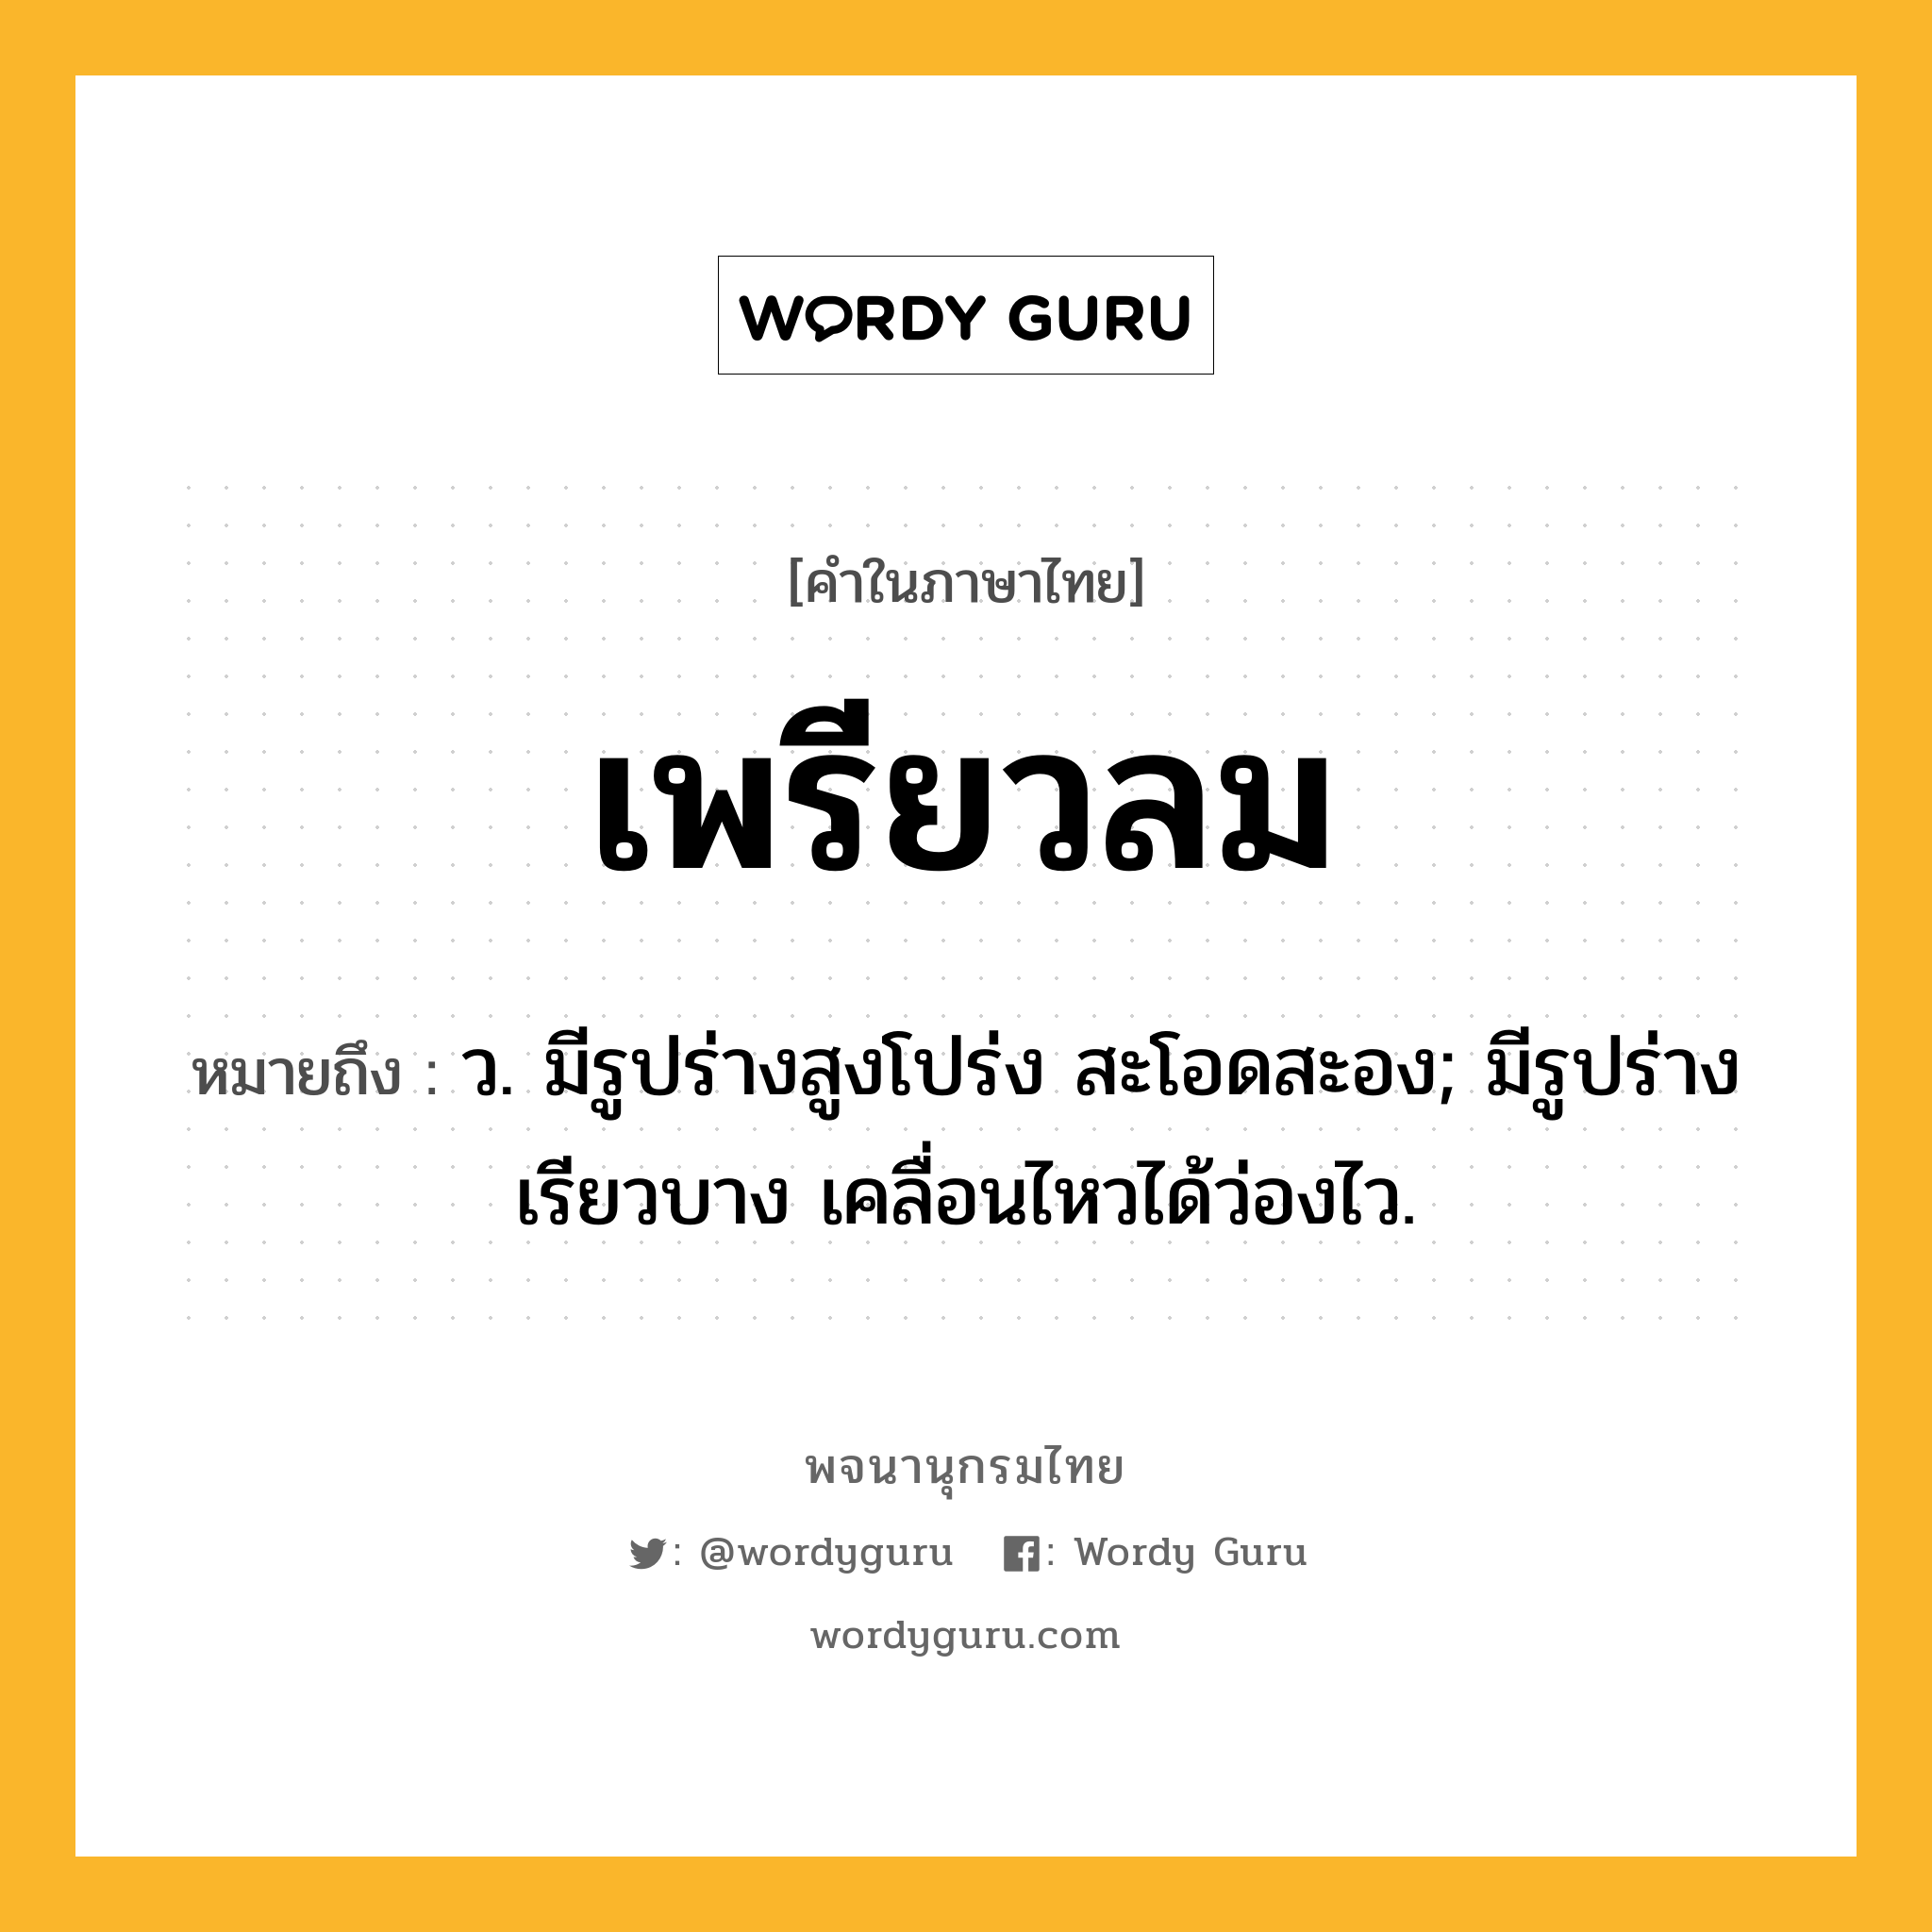 เพรียวลม ความหมาย หมายถึงอะไร?, คำในภาษาไทย เพรียวลม หมายถึง ว. มีรูปร่างสูงโปร่ง สะโอดสะอง; มีรูปร่างเรียวบาง เคลื่อนไหวได้ว่องไว.